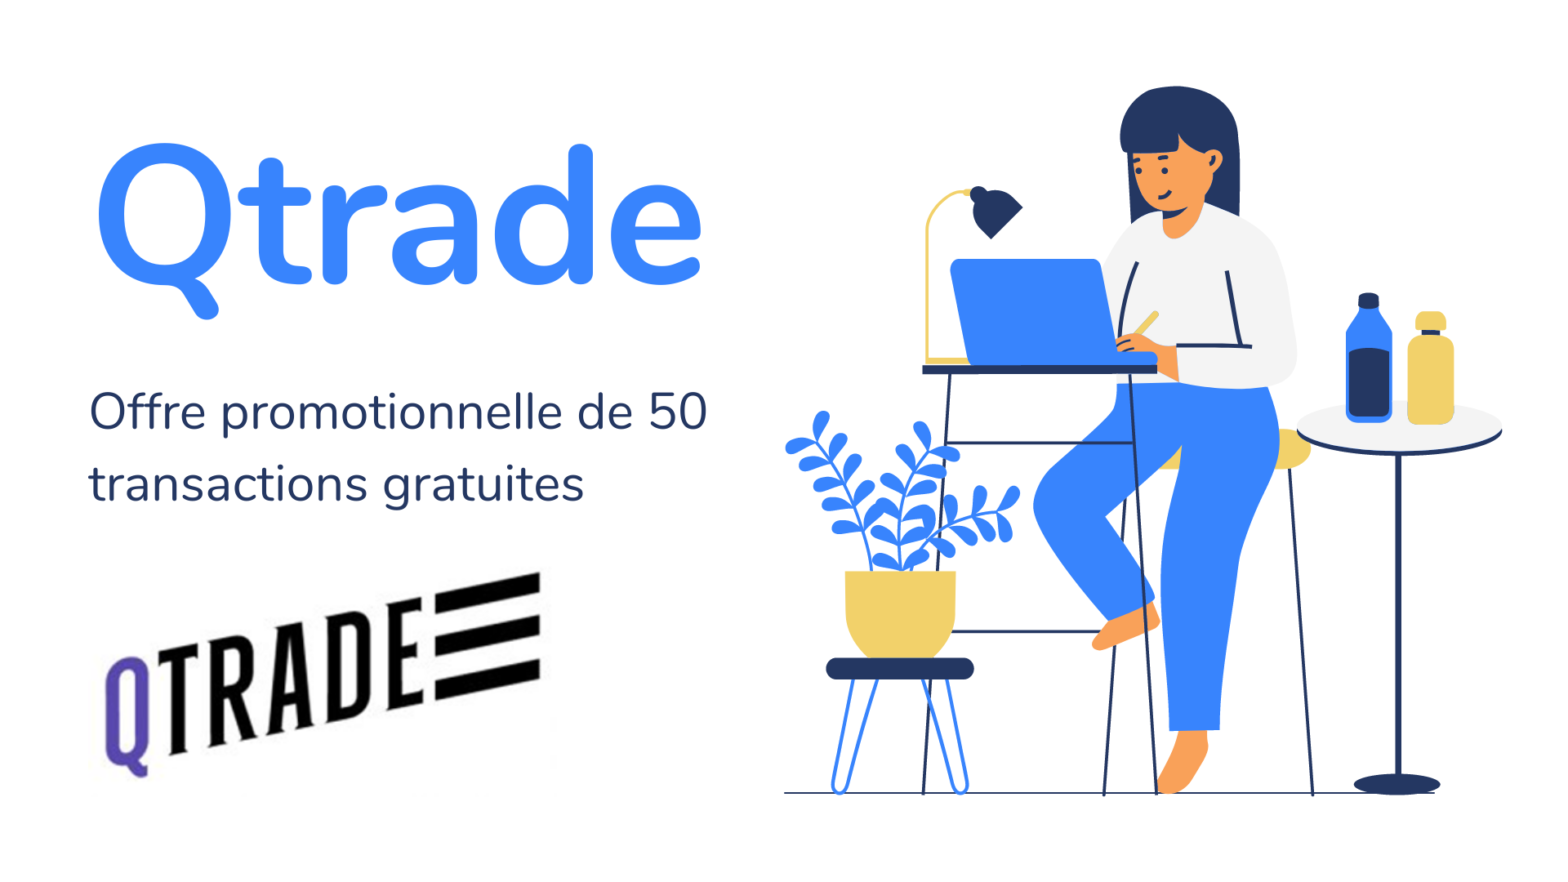 Qtrade : Offre promotionnelle de 50 transactions gratuites